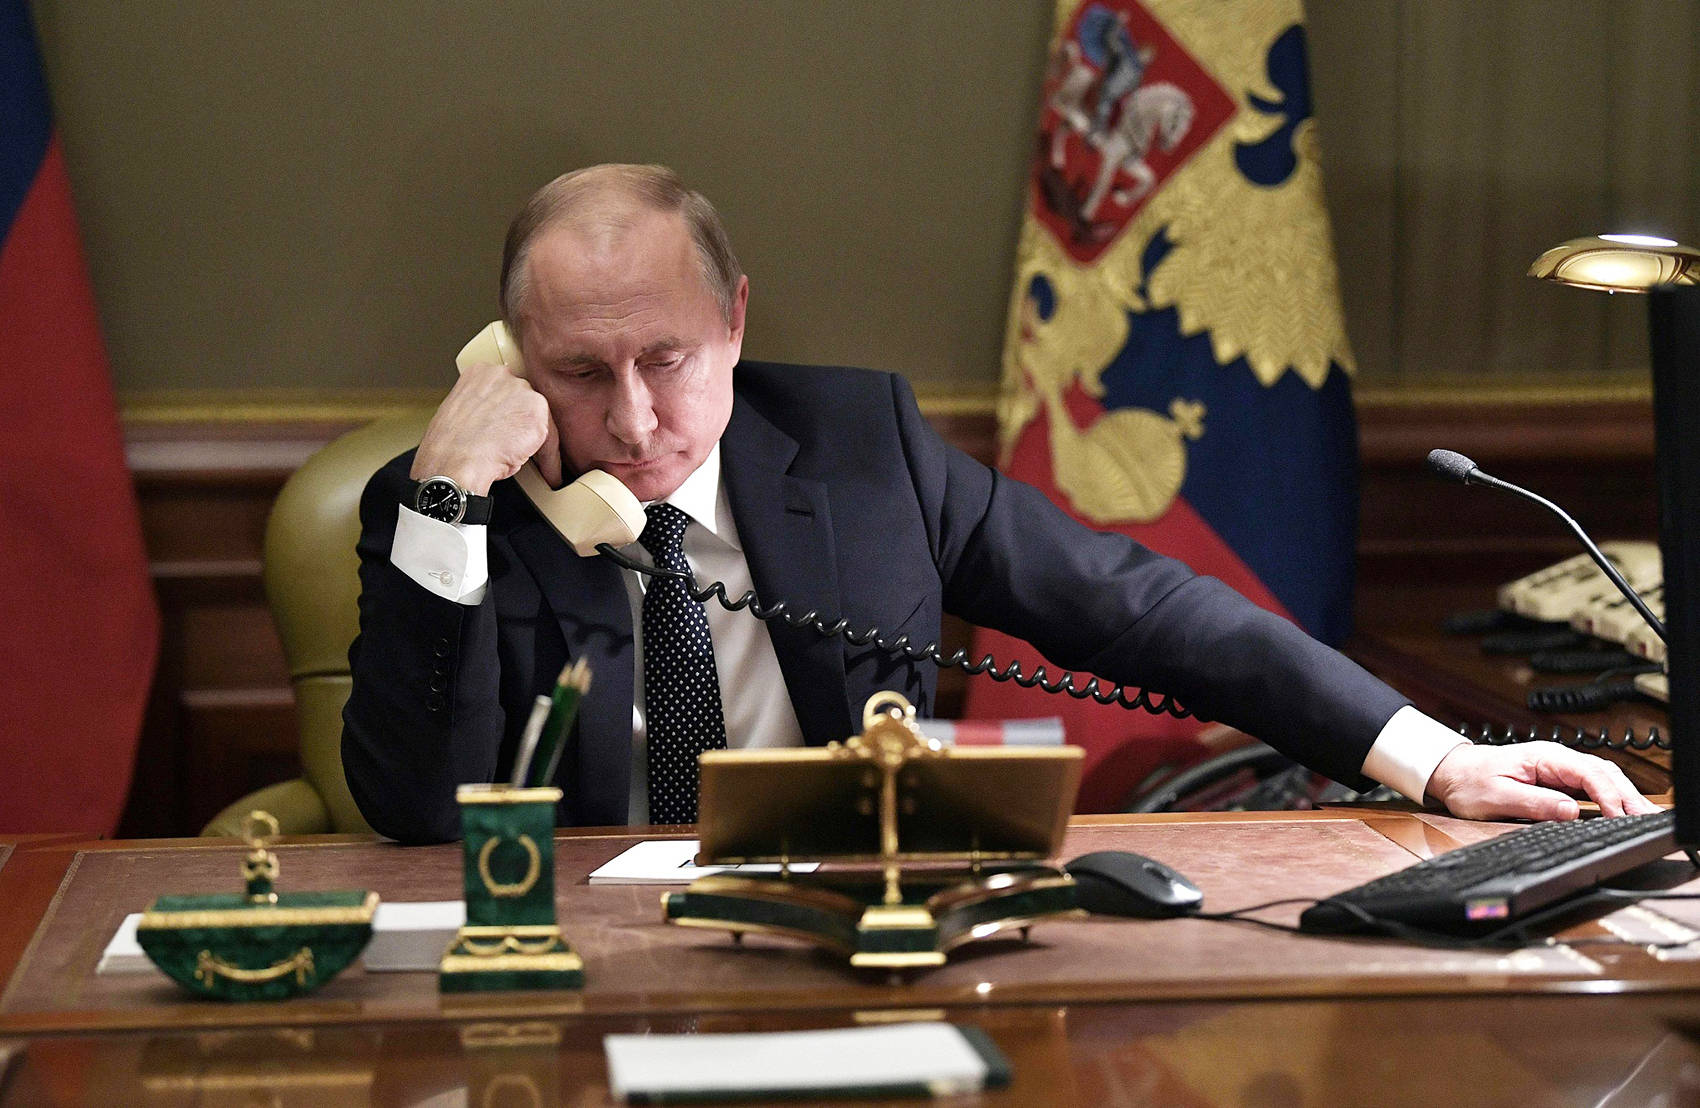 优享资讯 | 俄德领袖通电话 朔尔茨呼吁普京全面从乌克兰撤军